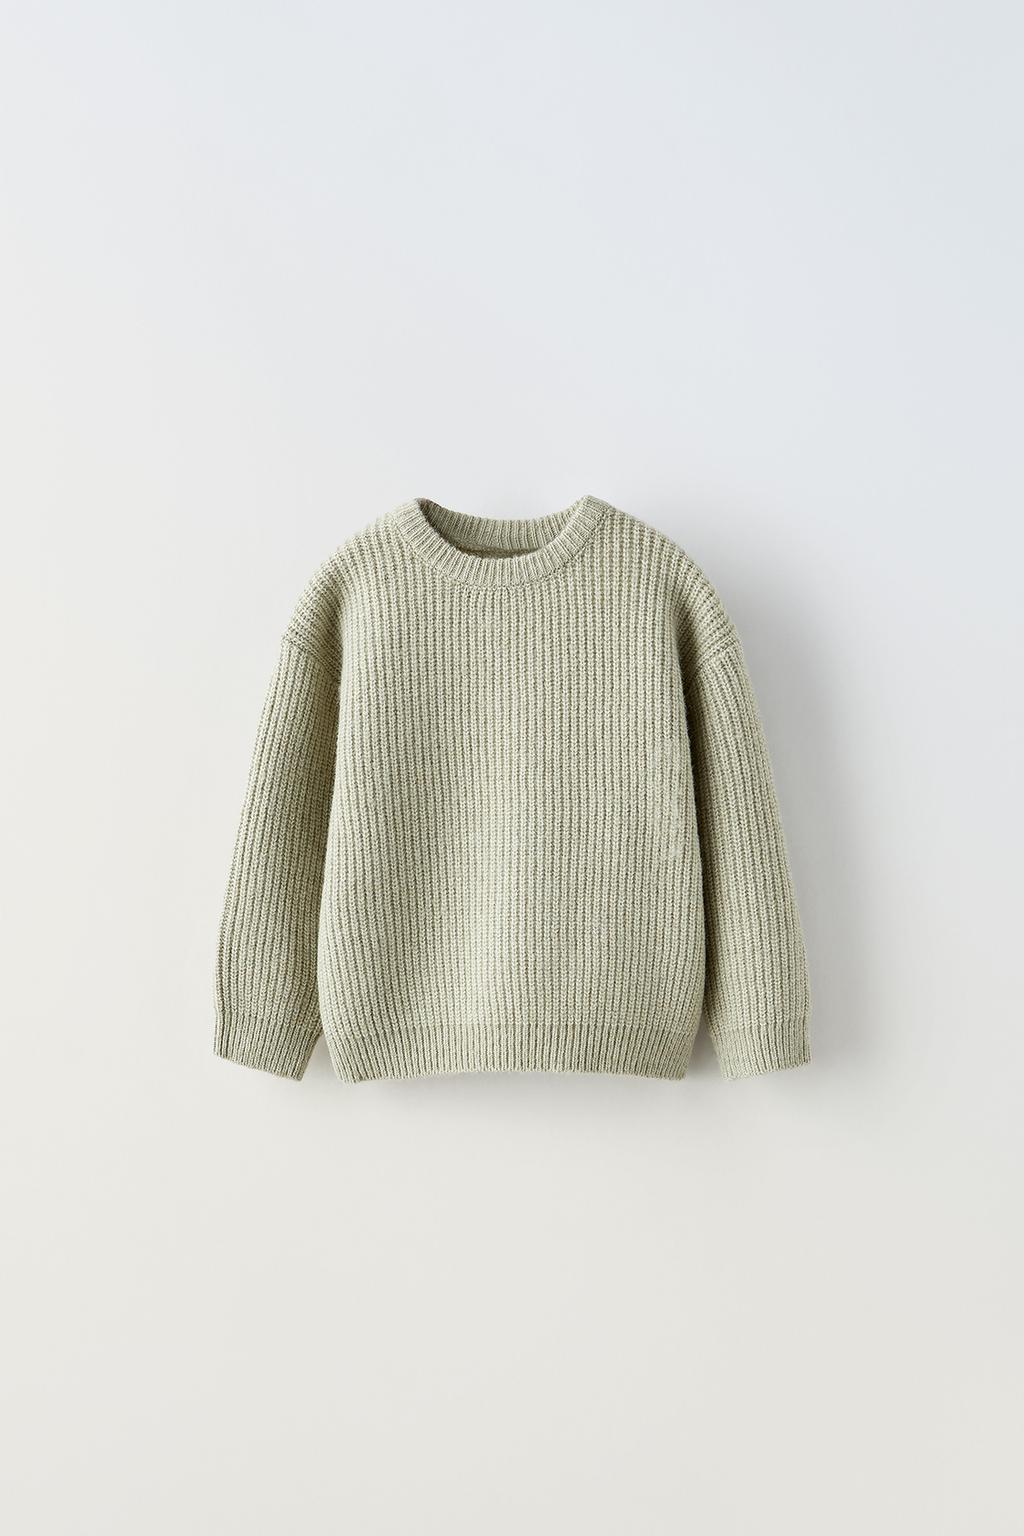 Базовый трикотажный свитер ZARA, зеленый мергель вязаный свитер с круглым вырезом женский свитер с длинными рукавами тонкий свободный вязаный универсальный топ женская одежда